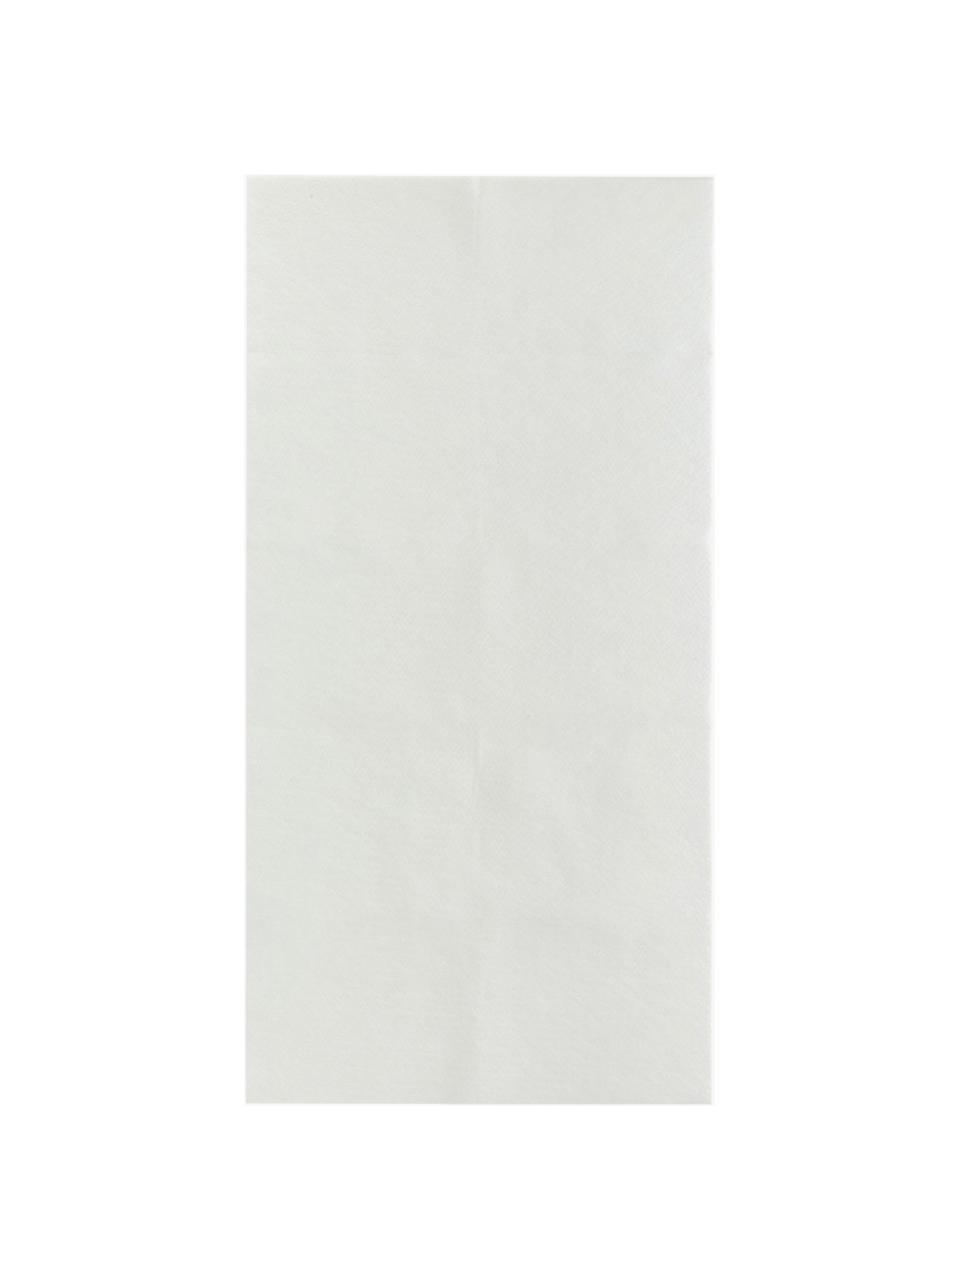 Podkład dywanowy z polaru poliestrowego My Slip Stop, Polar poliestrowy z powłoką antypoślizgową, Biały, S 150 x D 220 cm